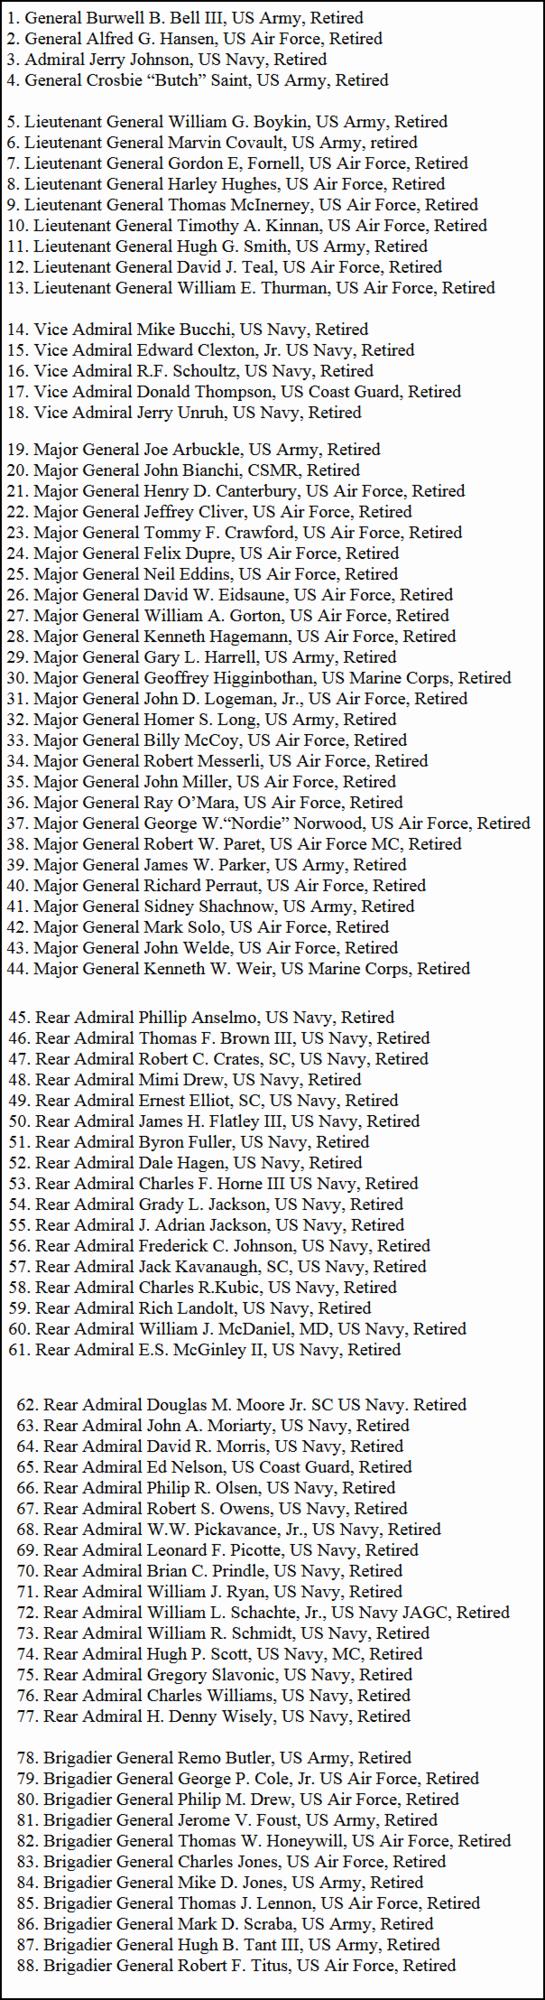 88名美军退役将领联署支持特朗普当选总统 包括4名四星上将